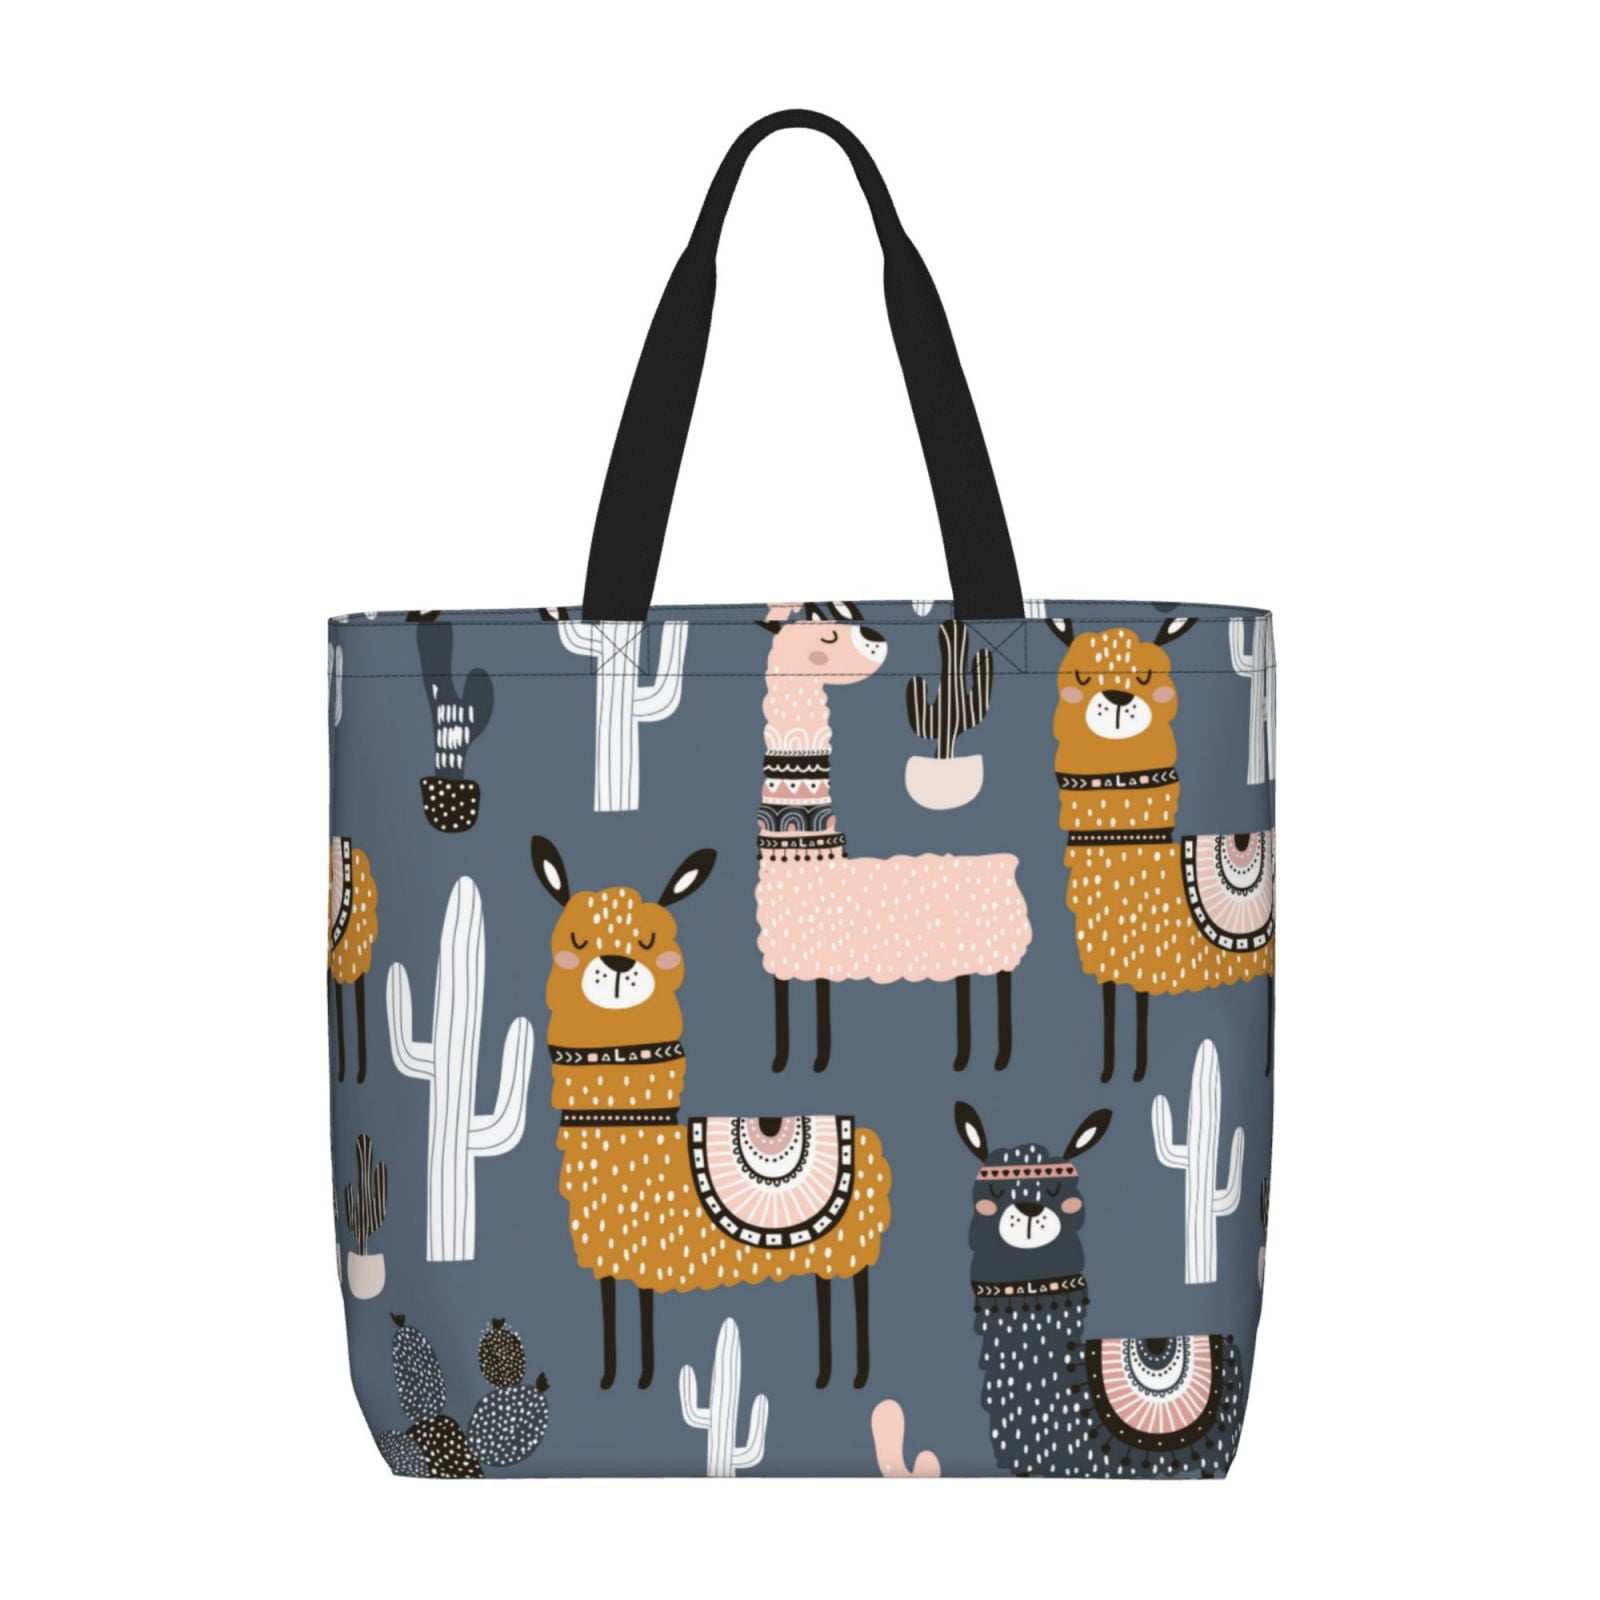 Adobk Llama and Cactus Print Tote Bags Shoulder Bag Beach Bag with ...